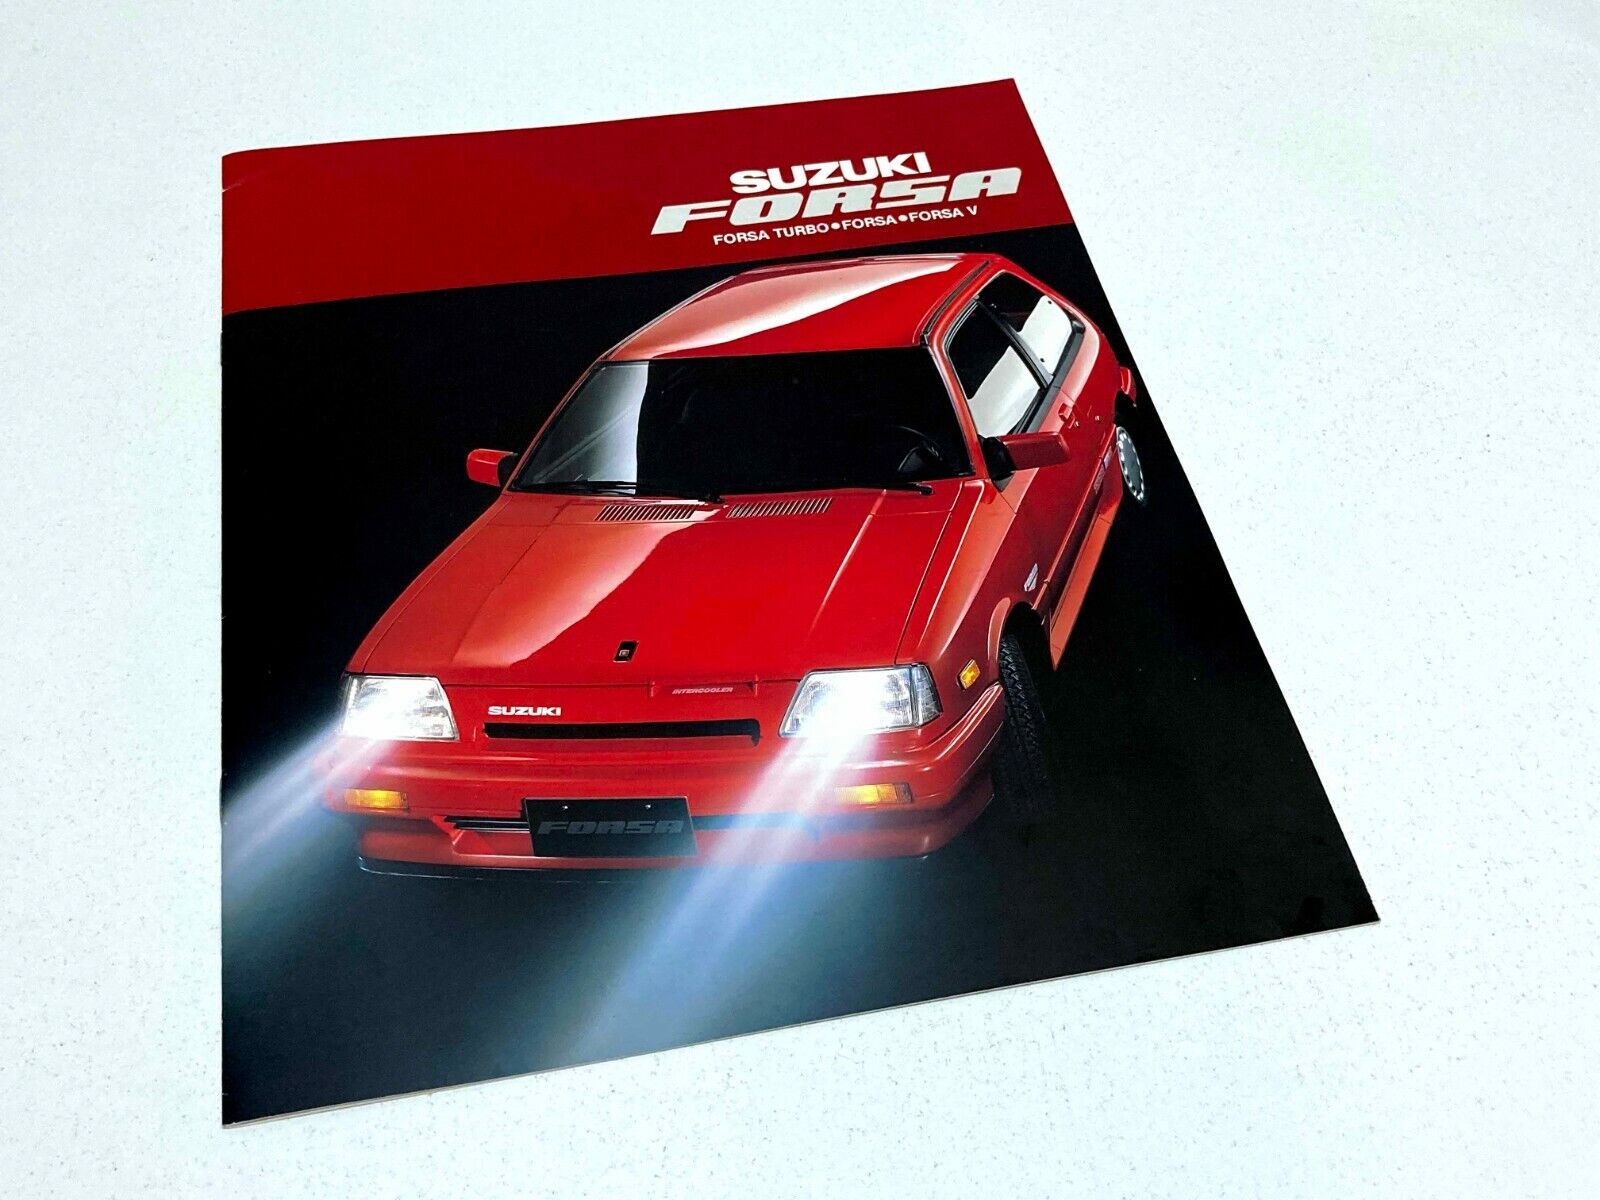 1987 Suzuki Forsa Brochure